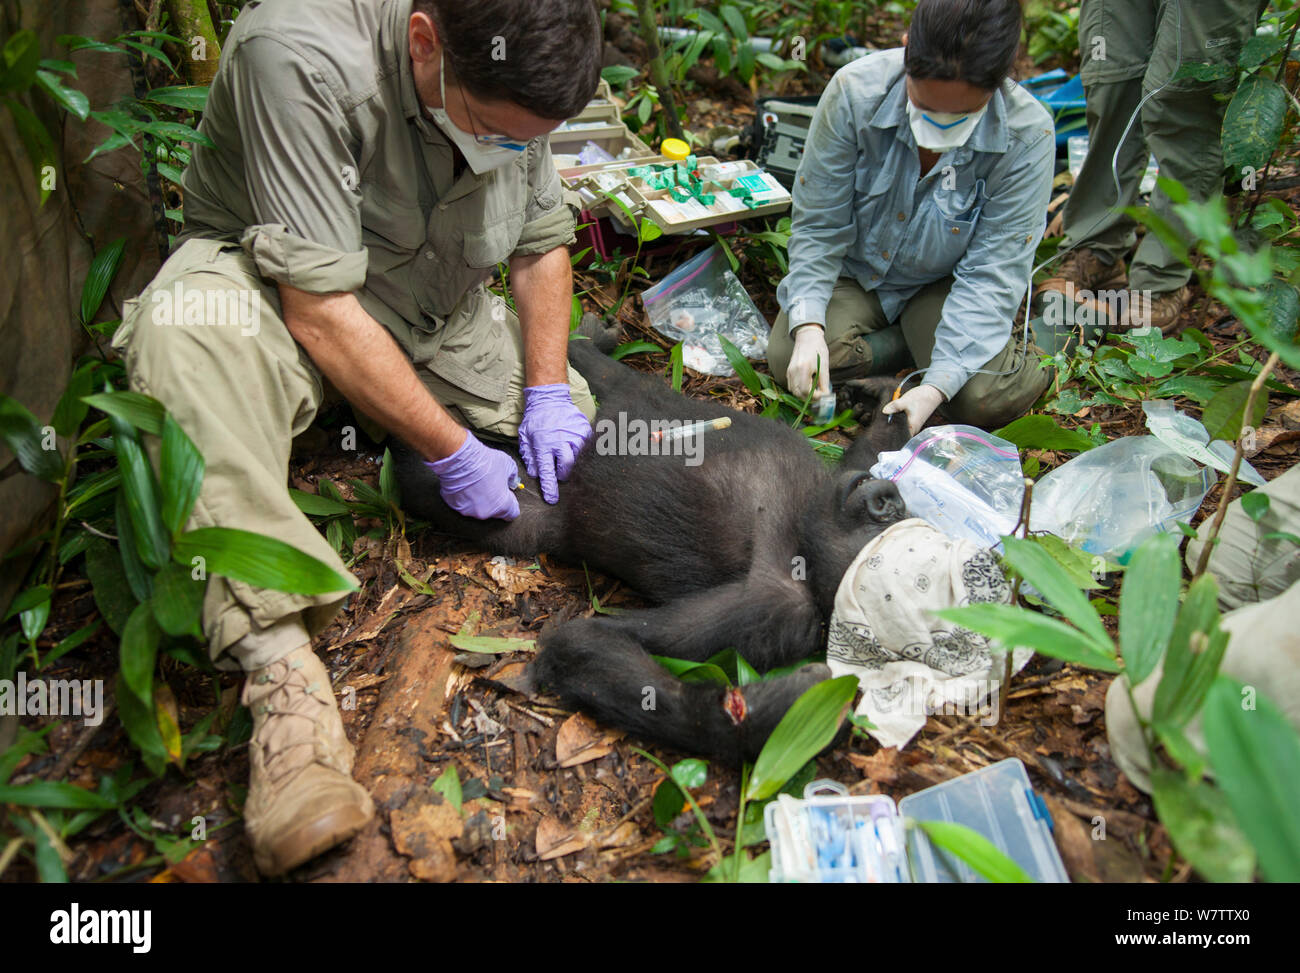 "Blackback' Gorila Occidental (Gorilla gorilla) 'Ngobo' anestesiados por equipo veterinario a fin de quitar el alambre trampa de muñeca. Mongambe, Parque Nacional Dzanga-Ndoki, República Centroafricana, junio de 2012. Modelo liberado. Foto de stock